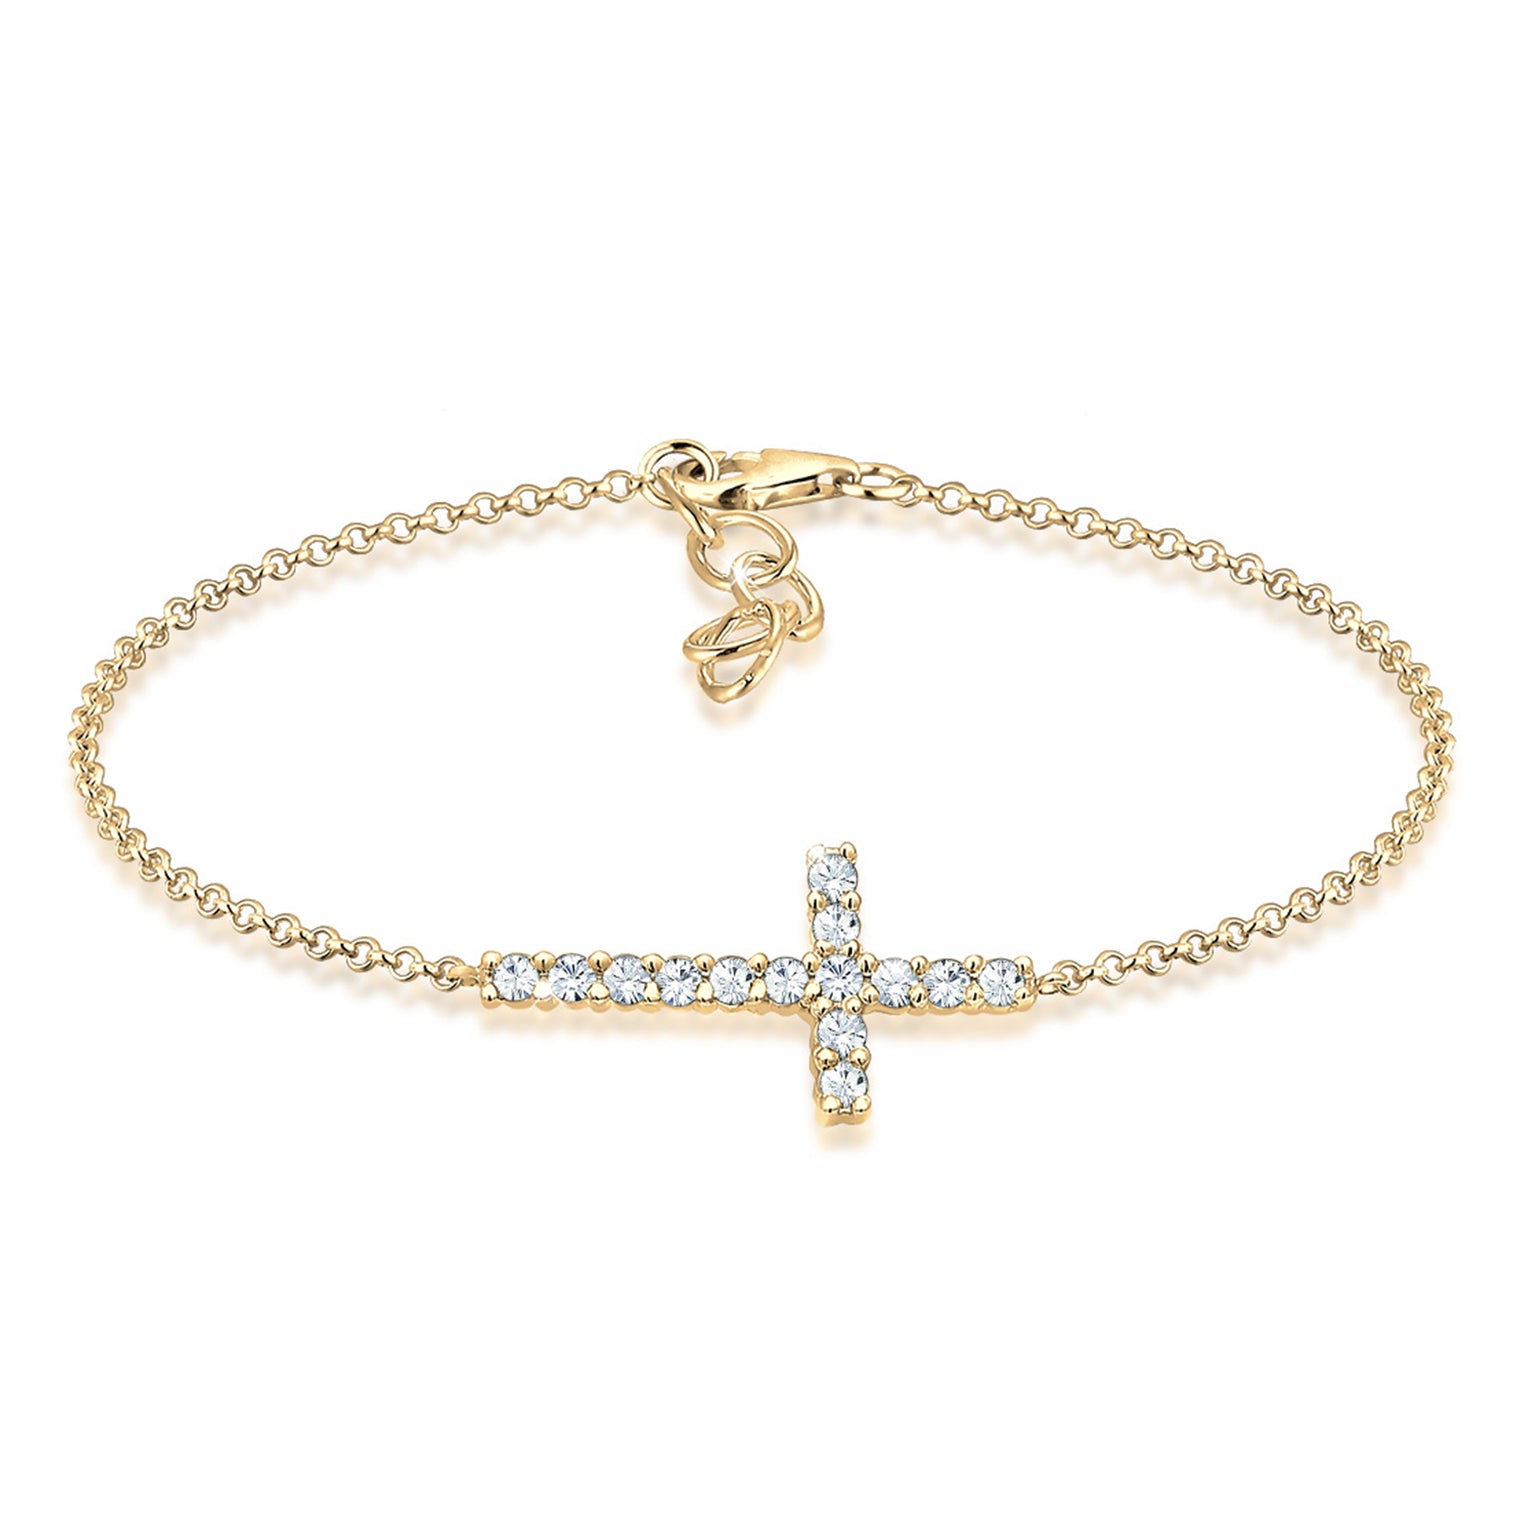 Kristall | Kreuz Armband ( Weiß Elli – Jewelry )